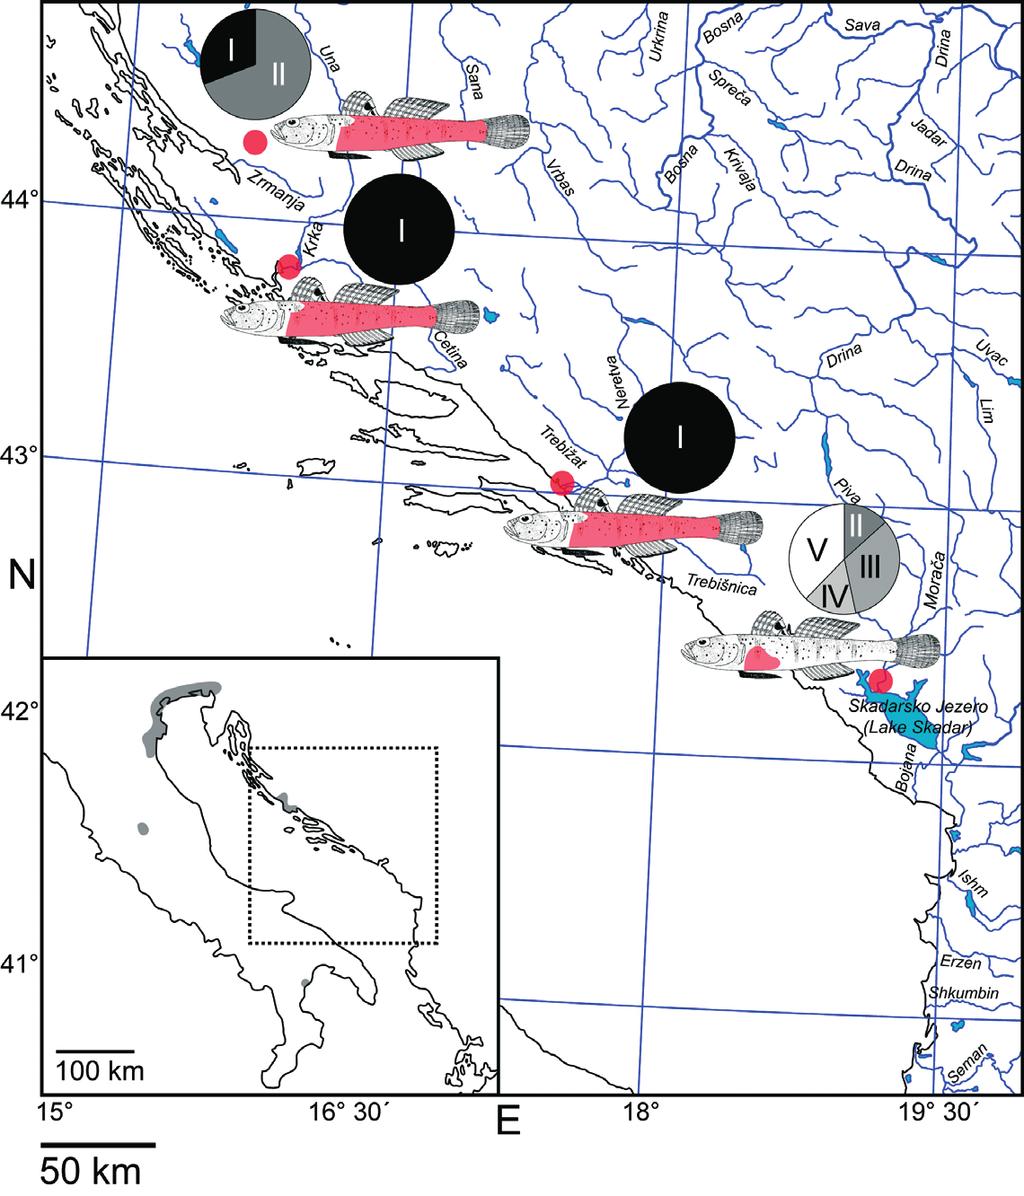 Outline map shows distribution of P. canestrinii, following Miller (2004). Abb. 3: Untersuchte Populationen von P. canestrinii. Rote Kreise zeigen Lage der Fundorte.